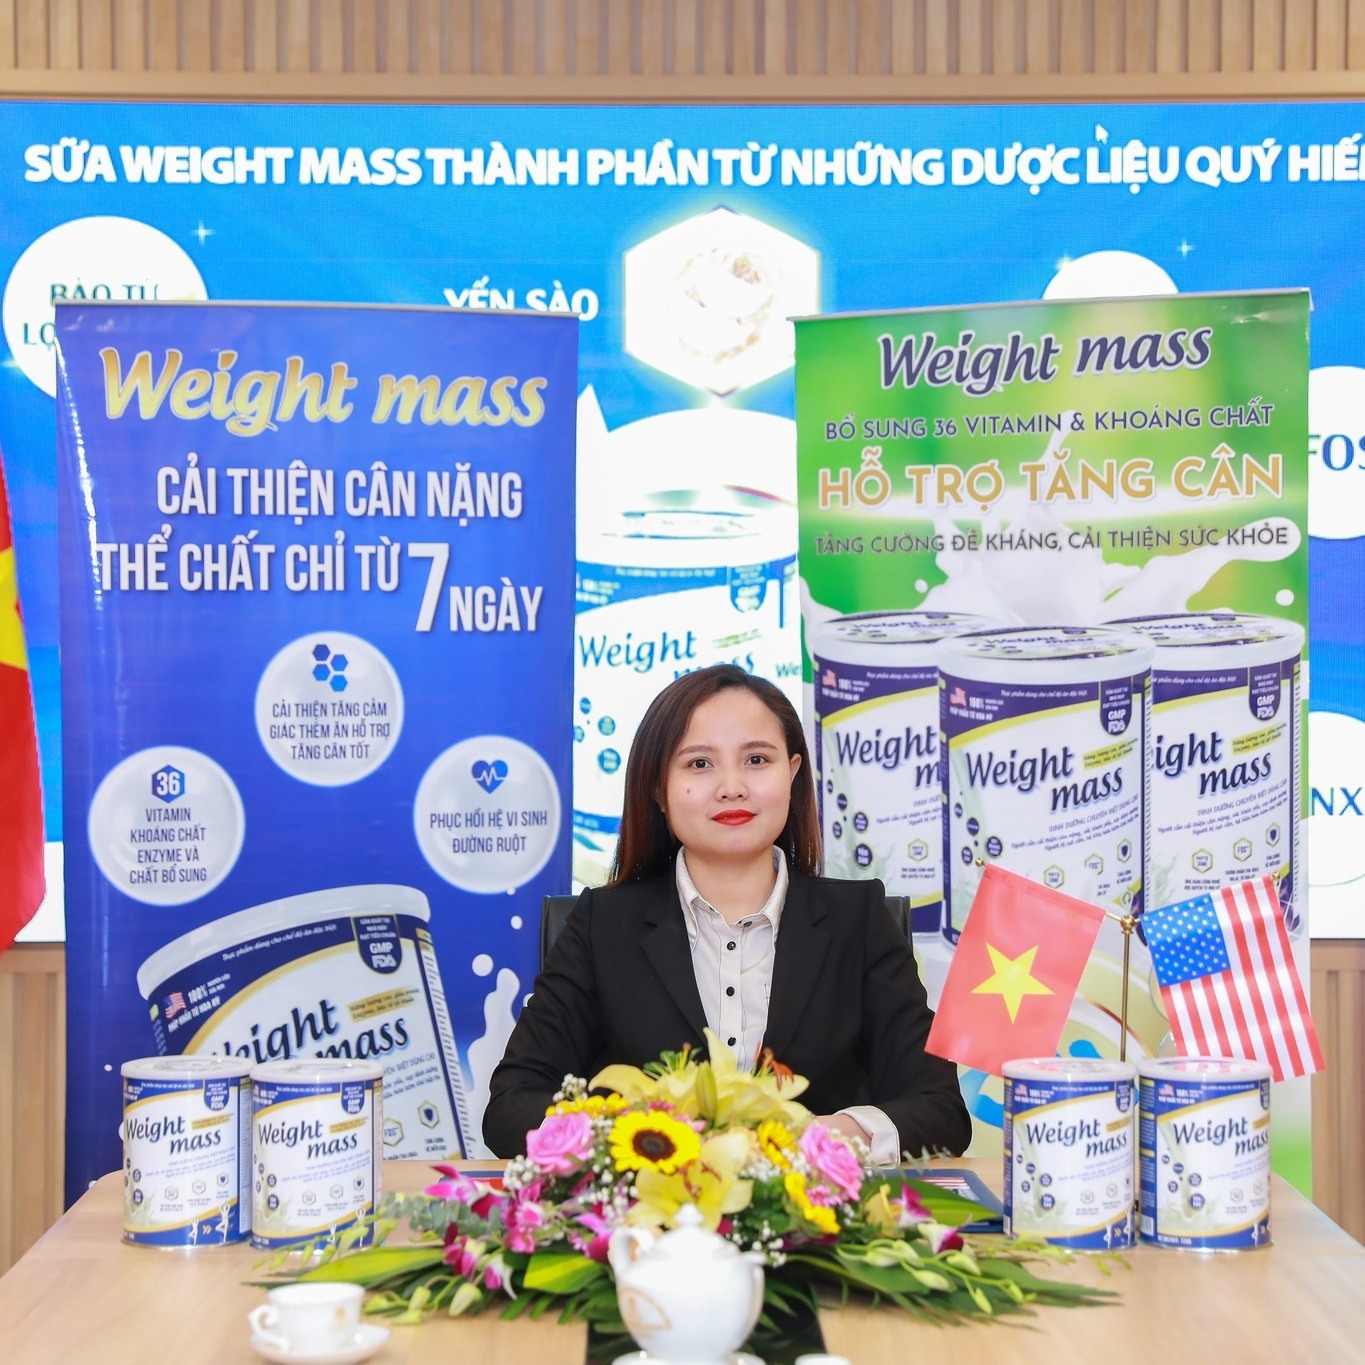 [TRỢ GIÁ] Sữa Tăng Cân Weight Mass CHINH_HANG Hộp Lớn 720g - 400g